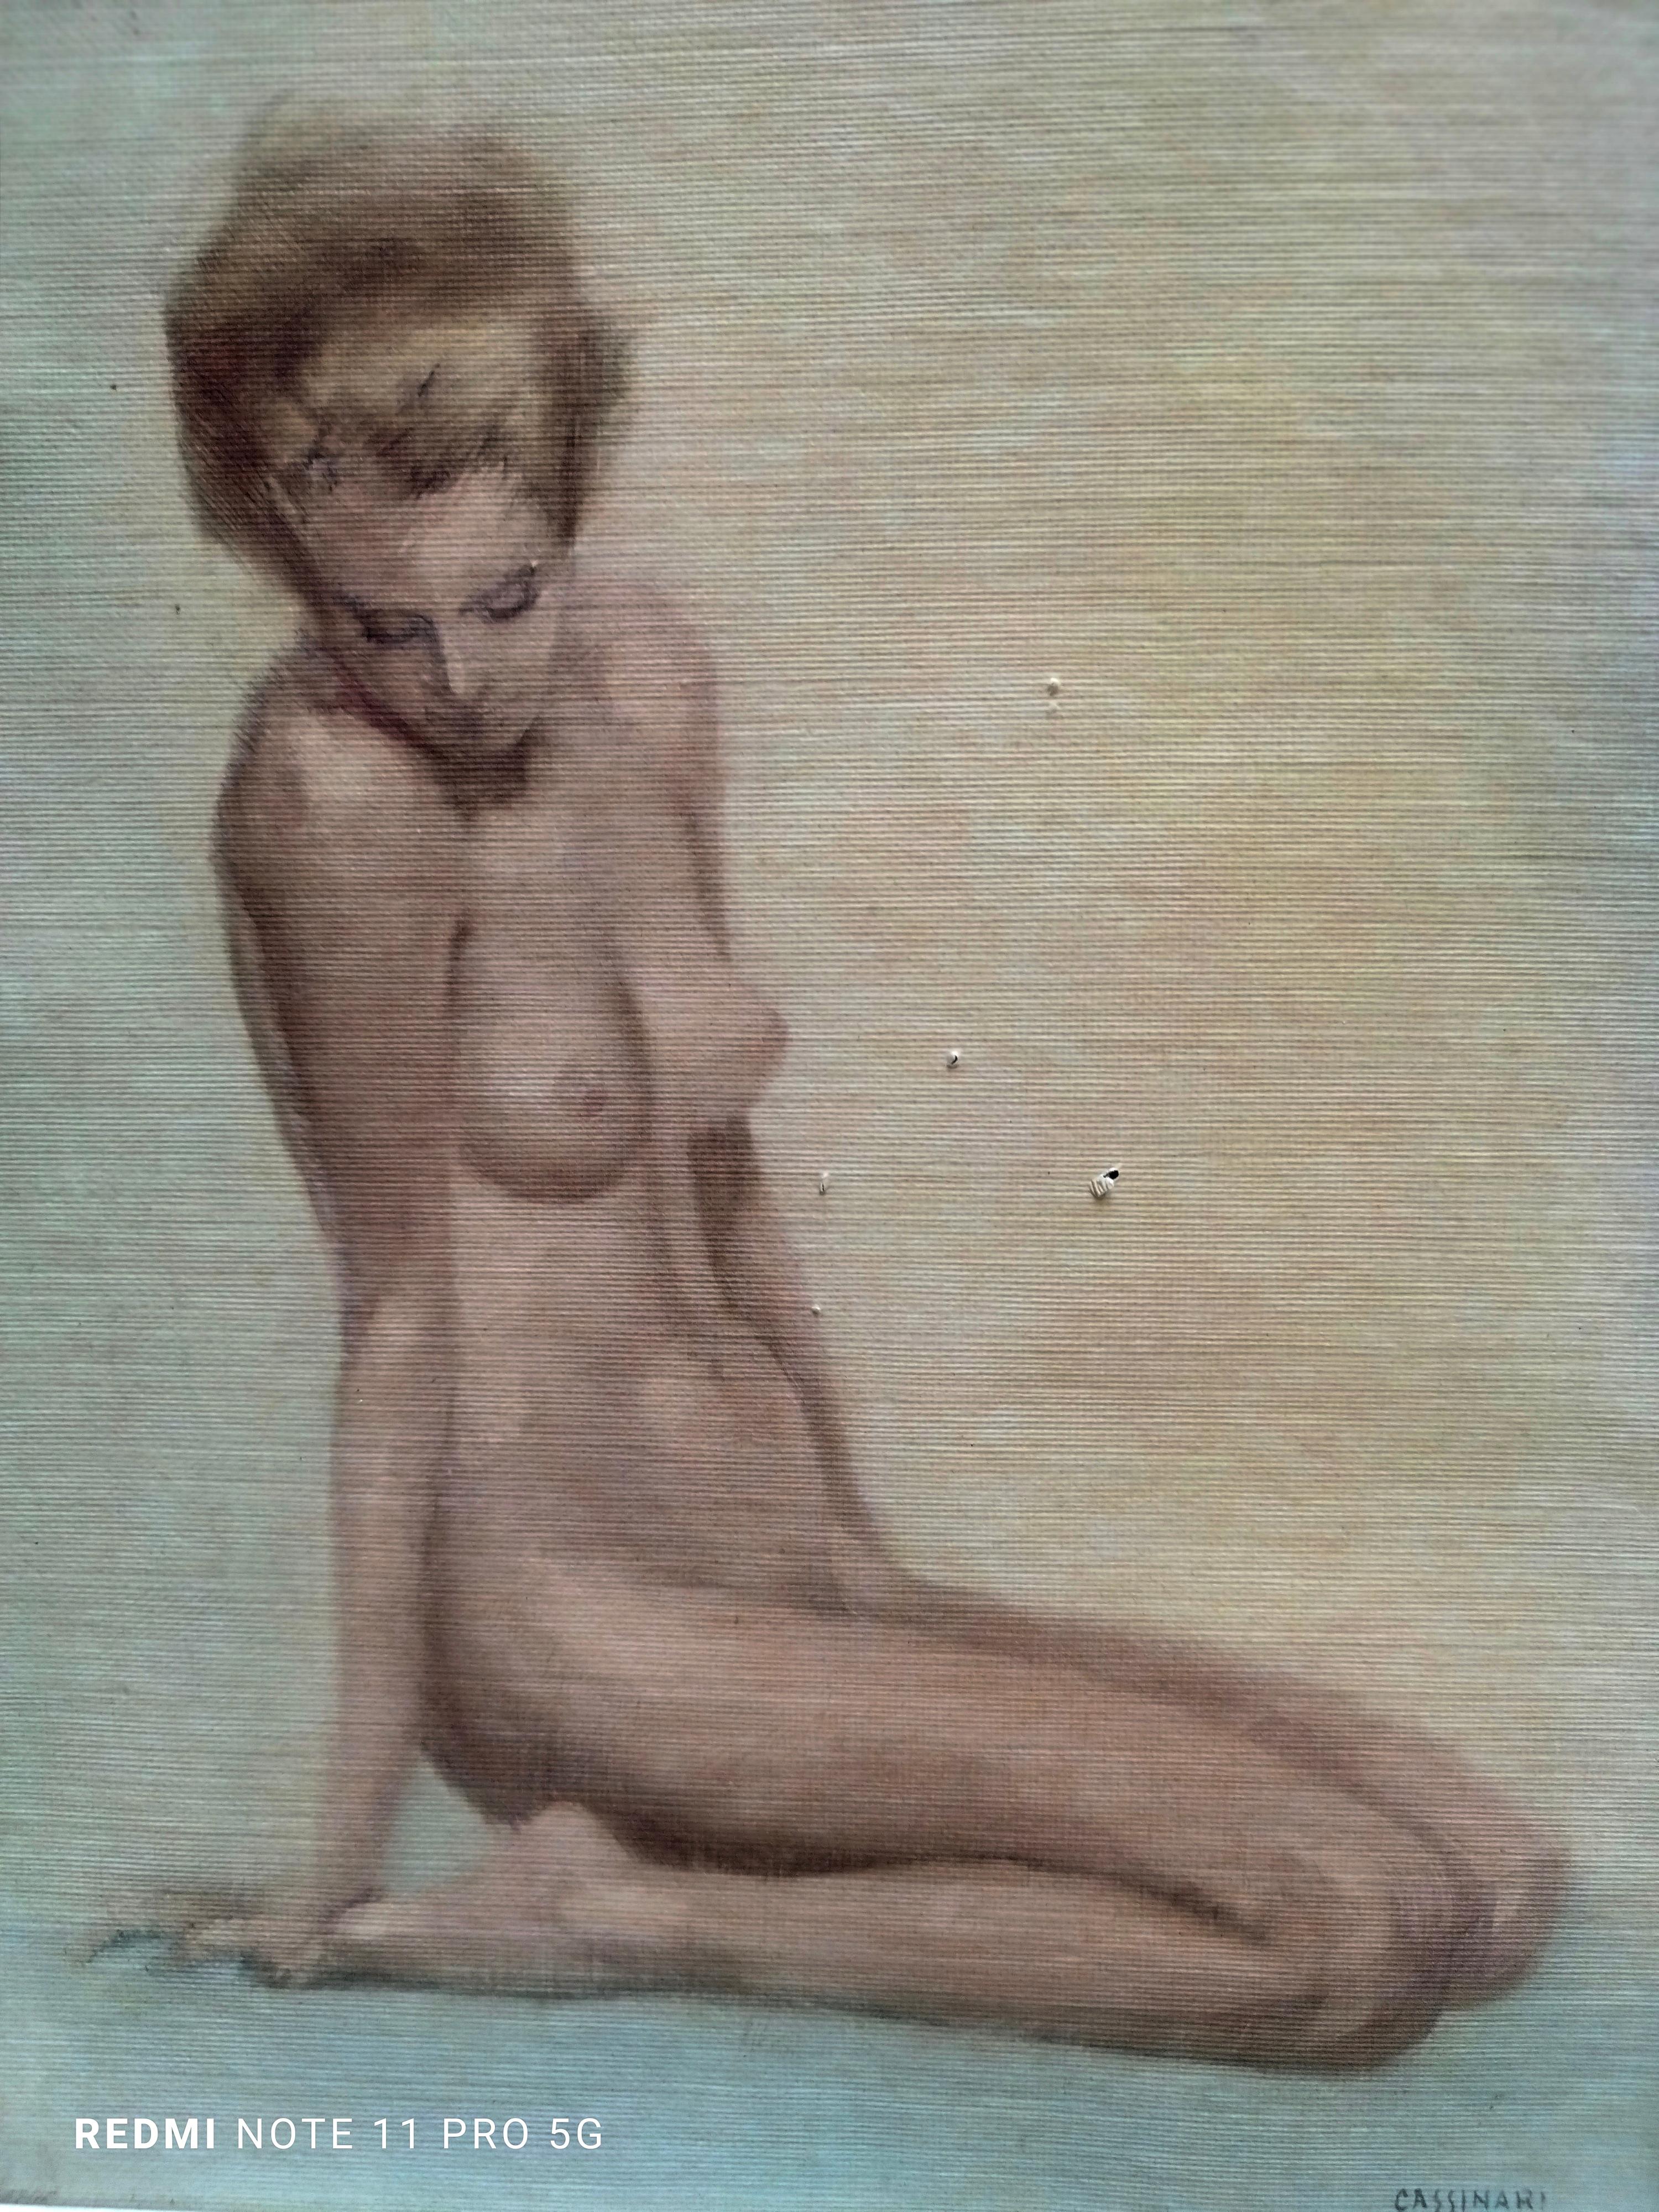 Fine Art Gicle Druck auf Leinwand eines Gemäldes von Marcello Cassinari Vettor, mit Rahmen Größe cm. 46x36